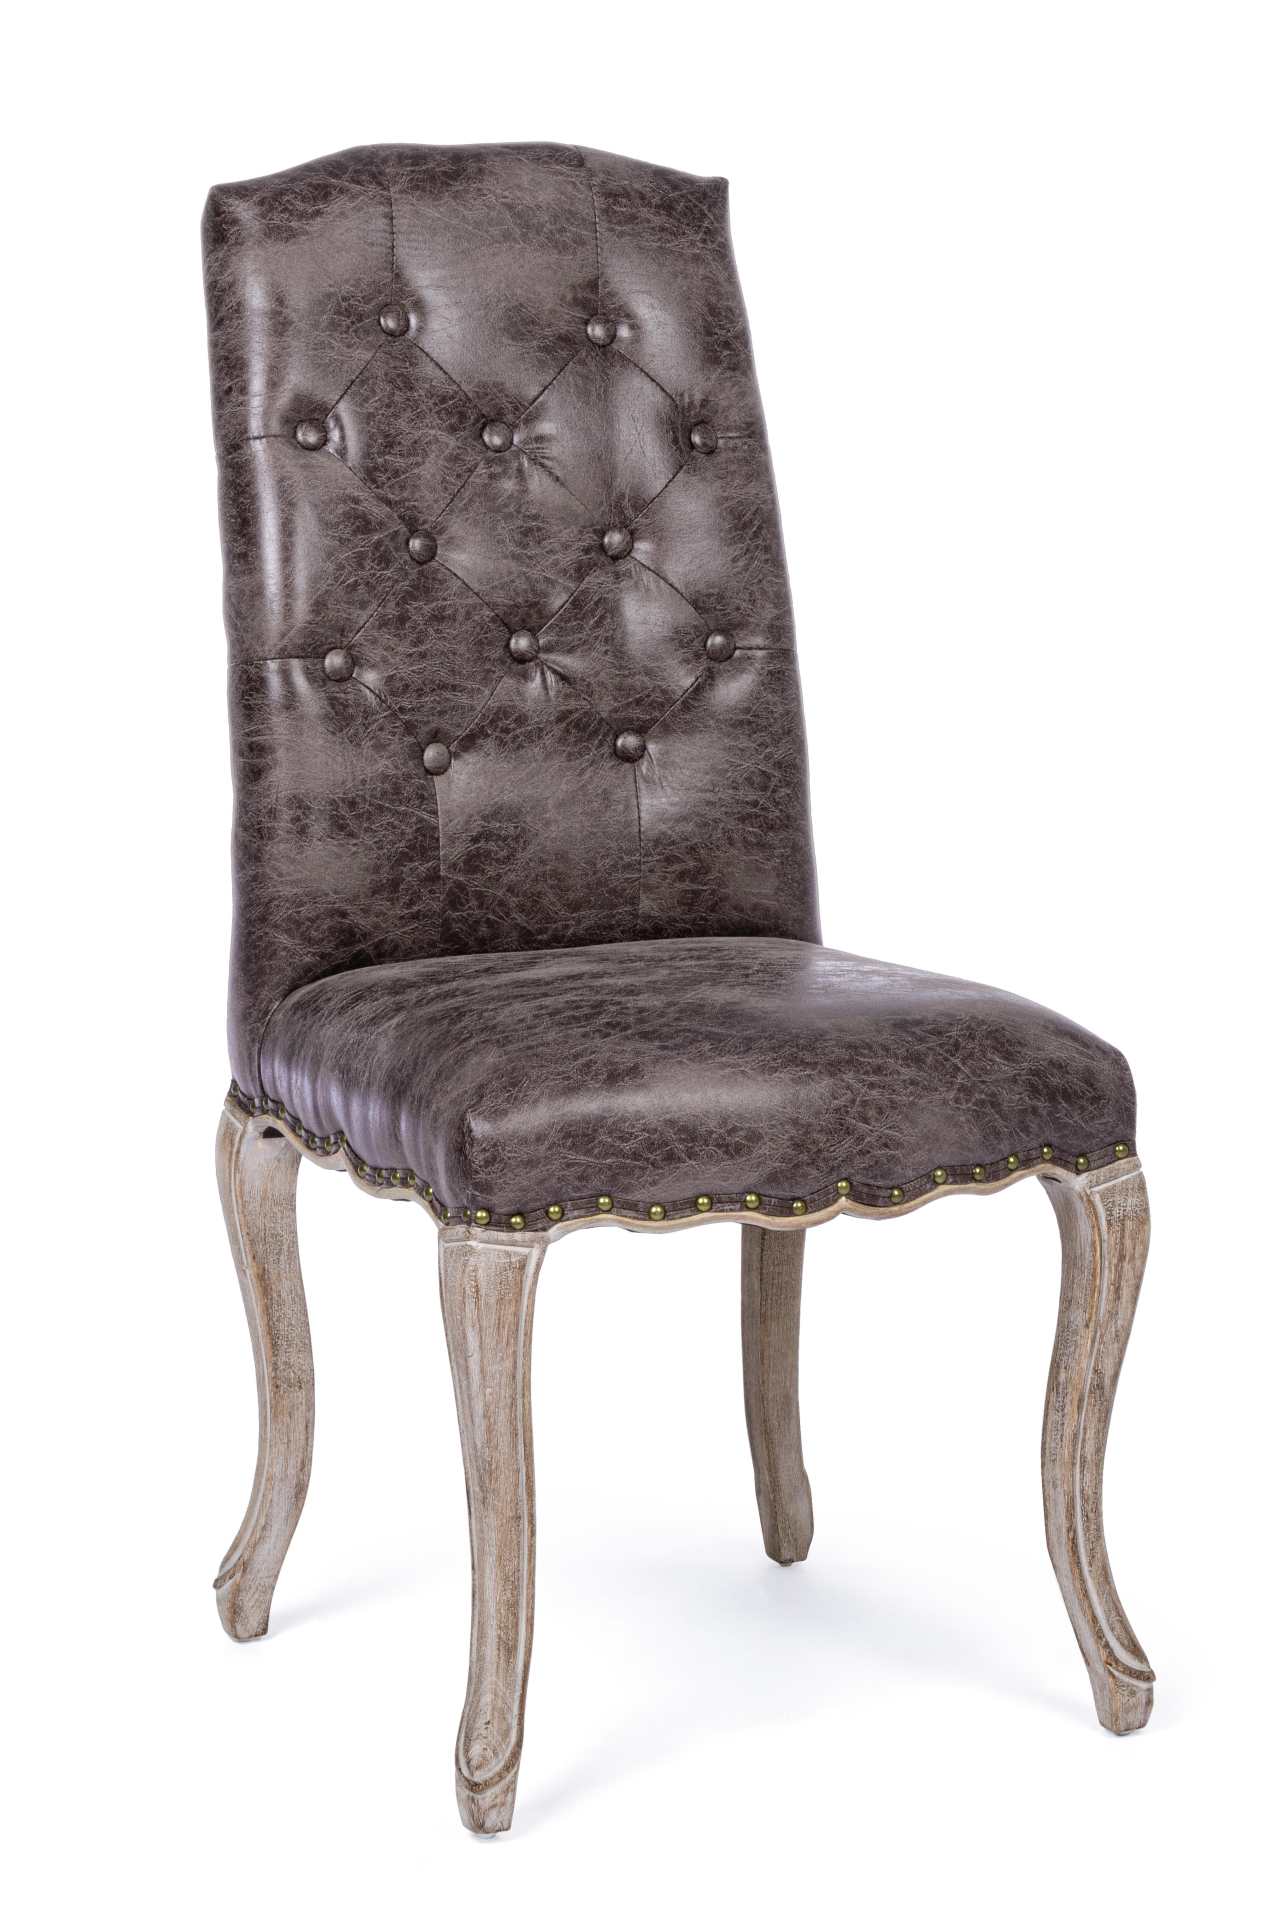 Der Esszimmerstuhl Diva überzeugt mit seinem klassischem Design. Gefertigt wurde der Stuhl aus einem Kunststoff-Bezug, welcher einen braunen Farbton besitzt. Das Gestell ist aus Holz und ist natürlich gehalten. Die Sitzhöhe beträgt 48 cm.